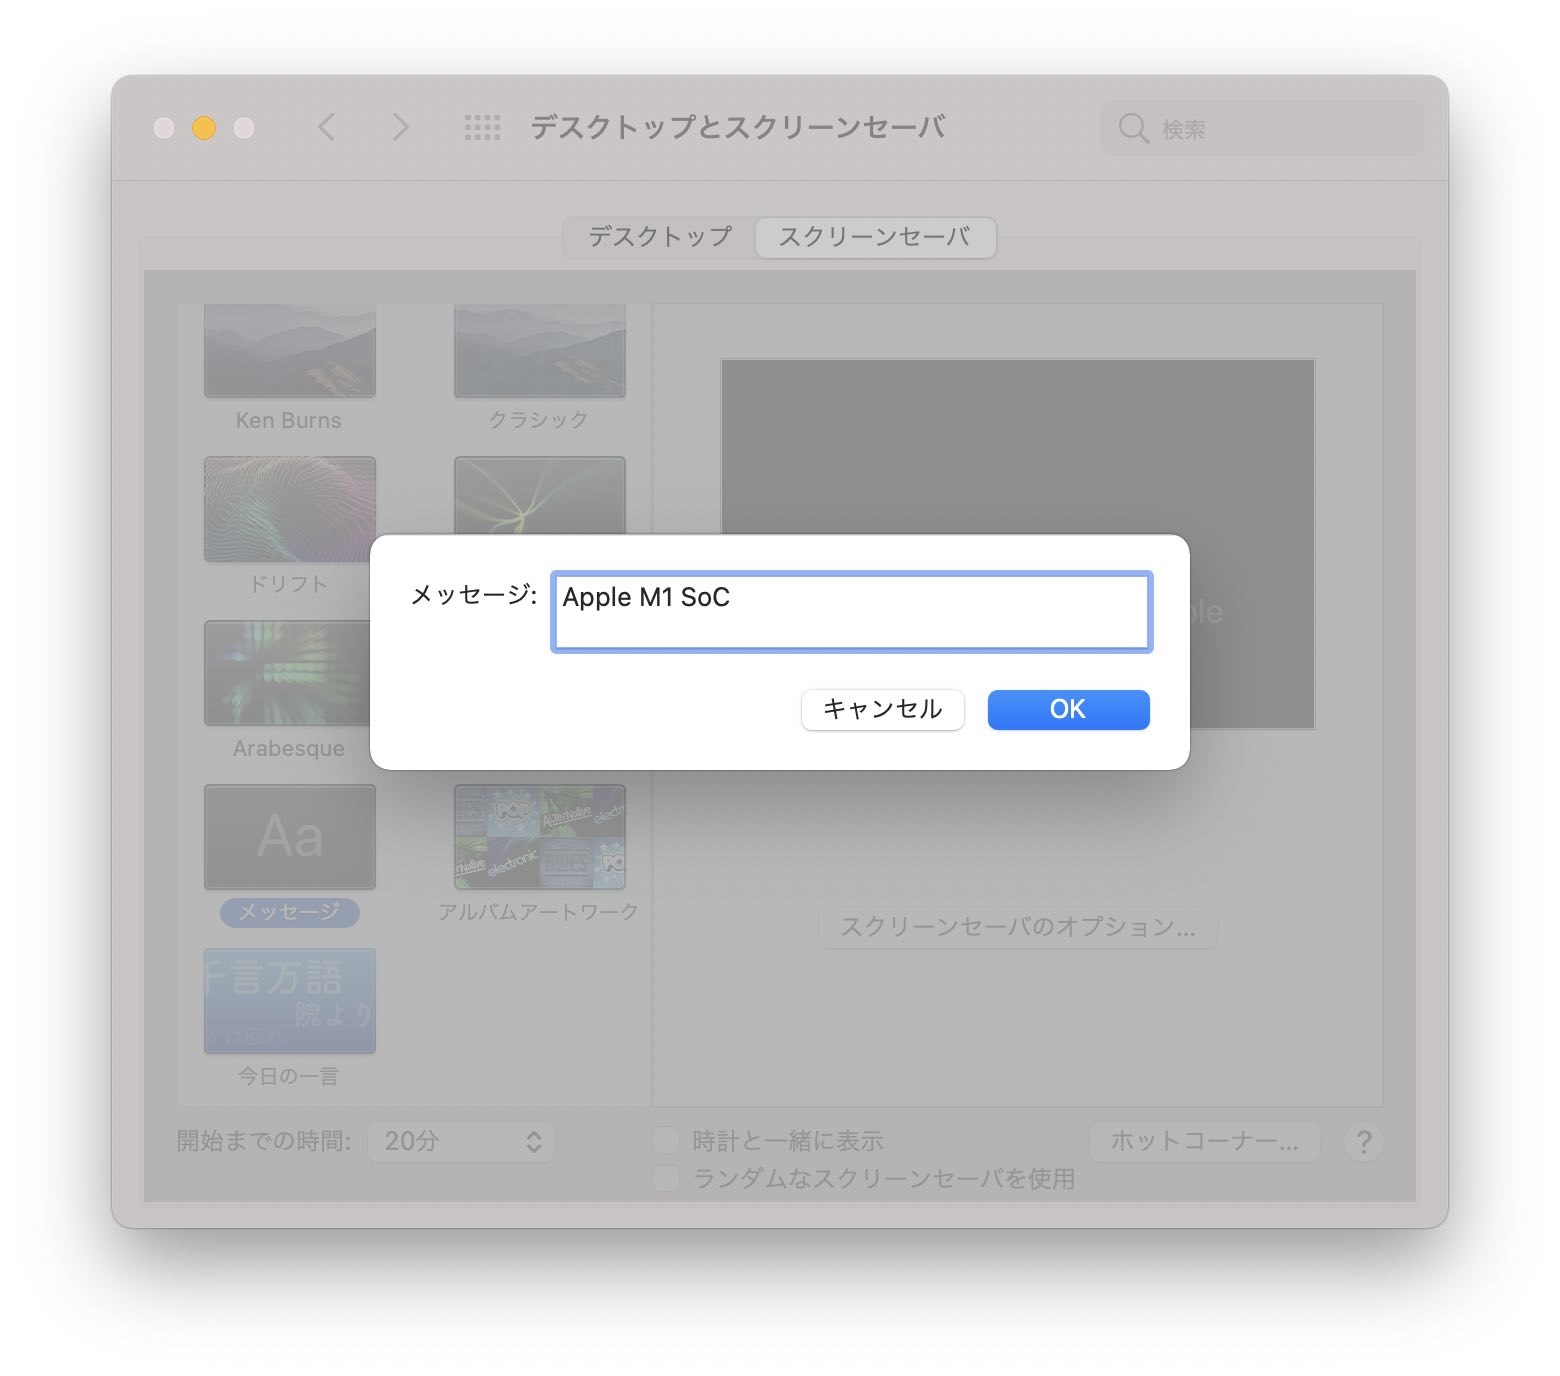 「メッセージ:」の項目に文字を入力すると、Macのスクリーンセーバーに入力したメッセージが表示されます。